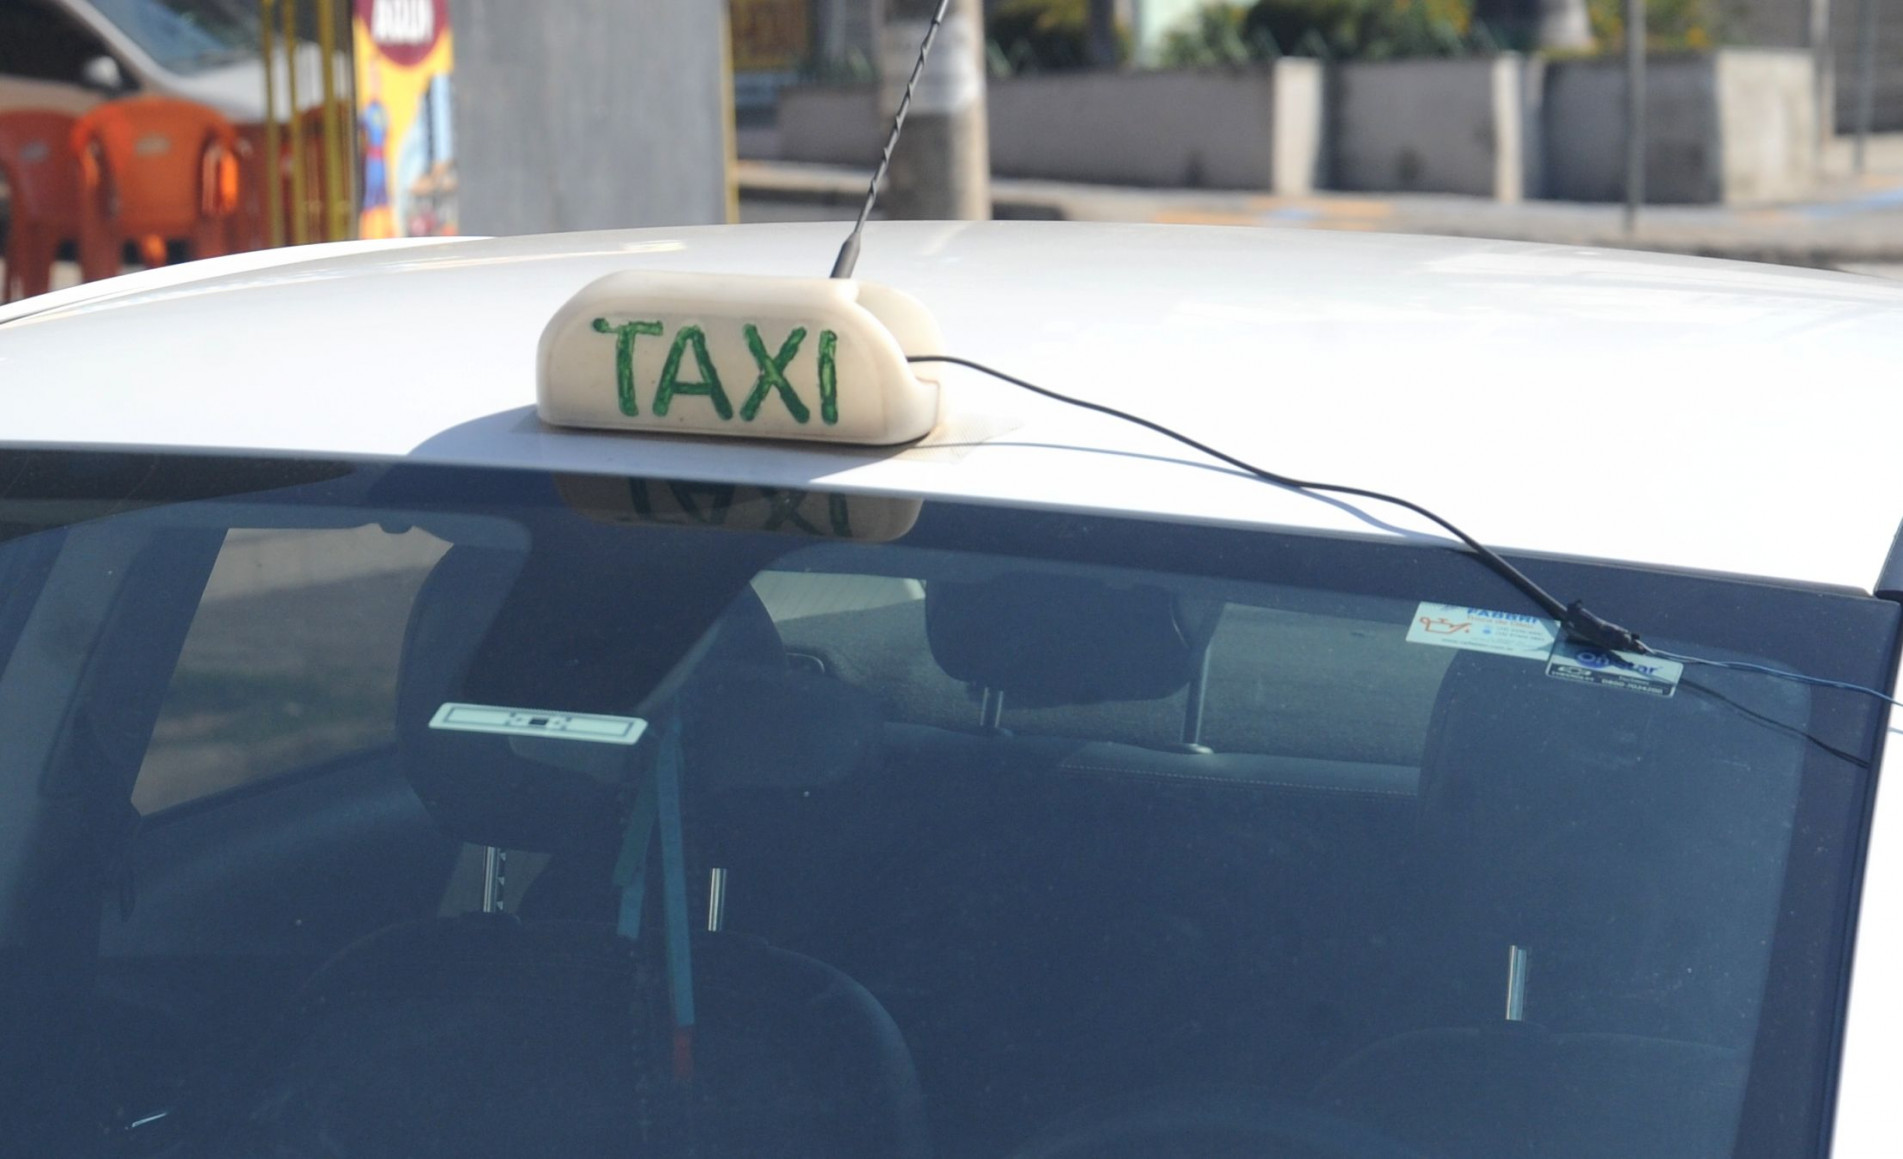 O táxi é um serviço regulamentado e fiscalizado pela Urbes -- Trânsito e Transportes, que é submetido a alvará, aferição do taxímetro e inspeção do veículo e que todo ano precisa ser avaliado